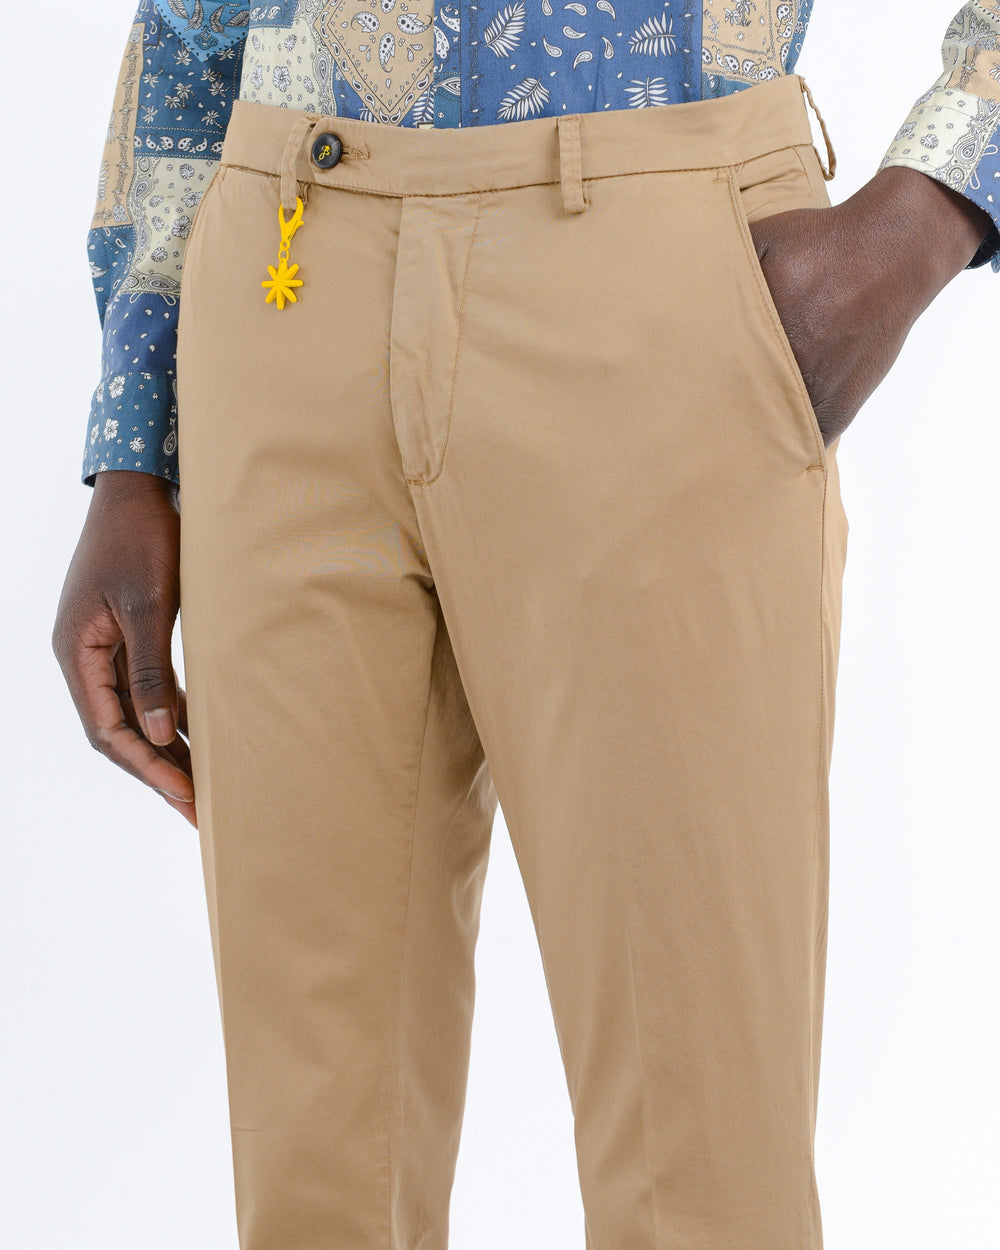 Pantalone slim tinto capo in cotone stretch beige